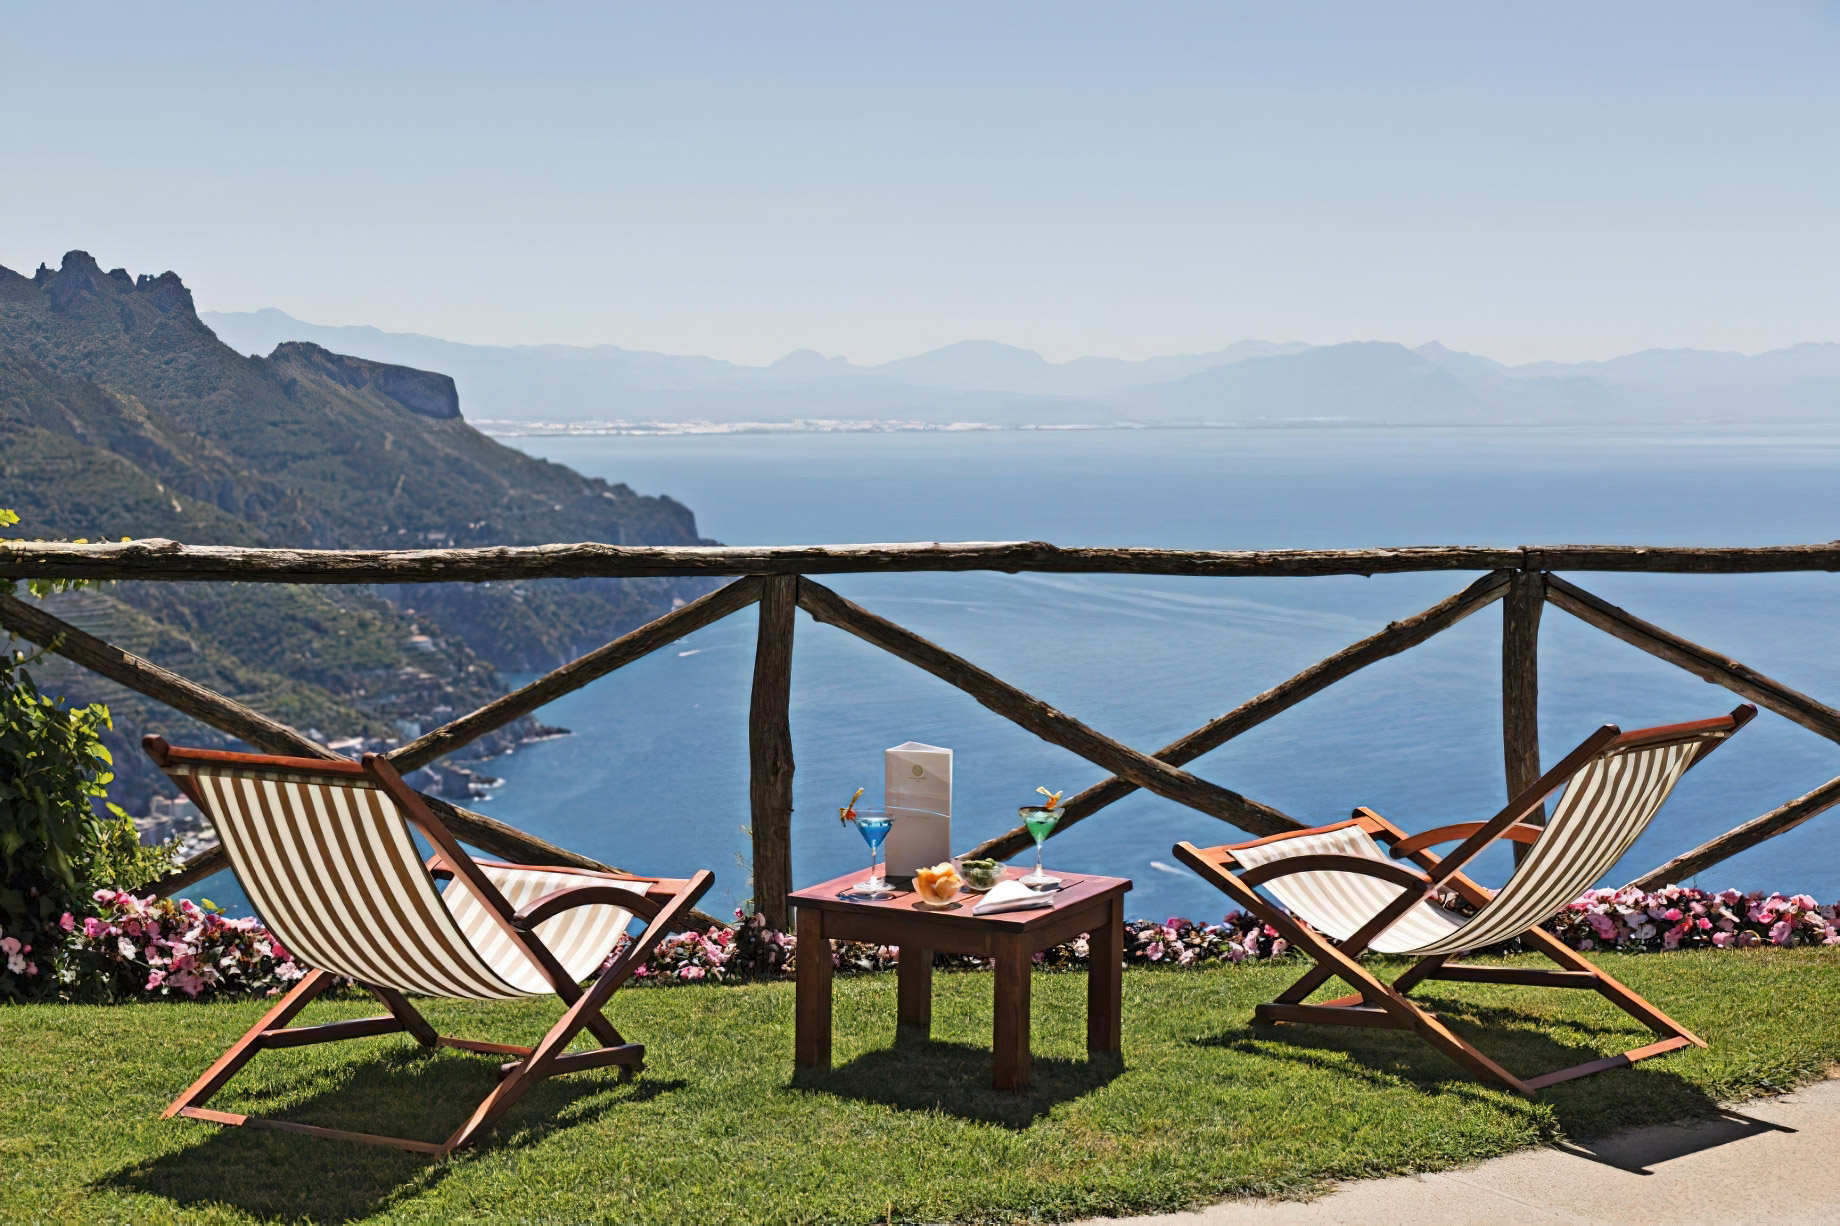 Palazzo Avino Hotel – Amalfi Coast, Ravello, Italy – Ocean View